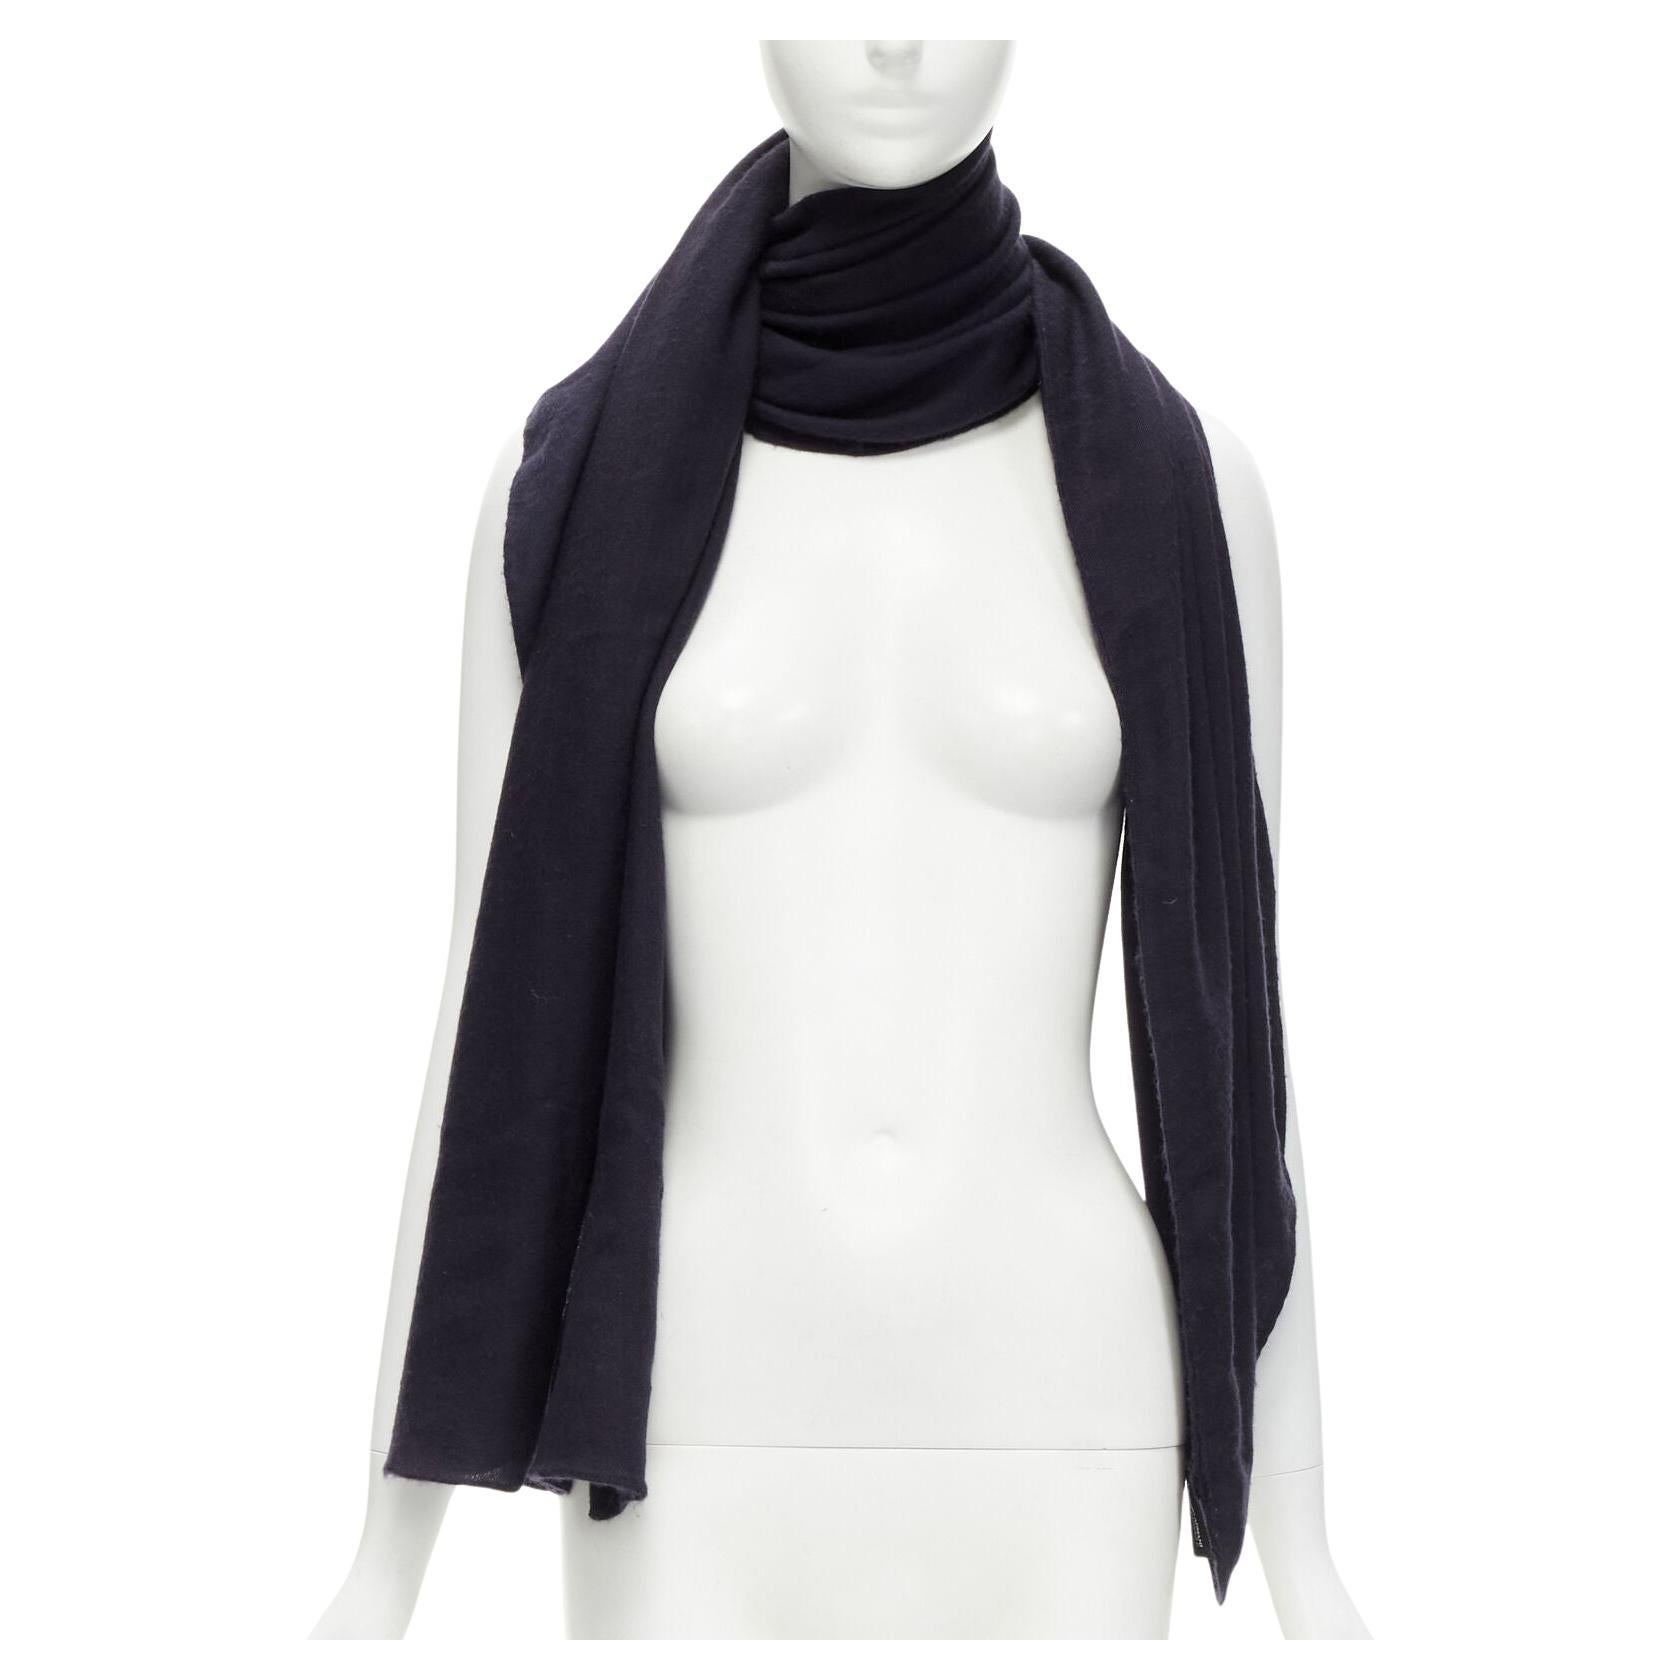 GIORGIO ARMANI 100% cashmere black soft half moon scarf